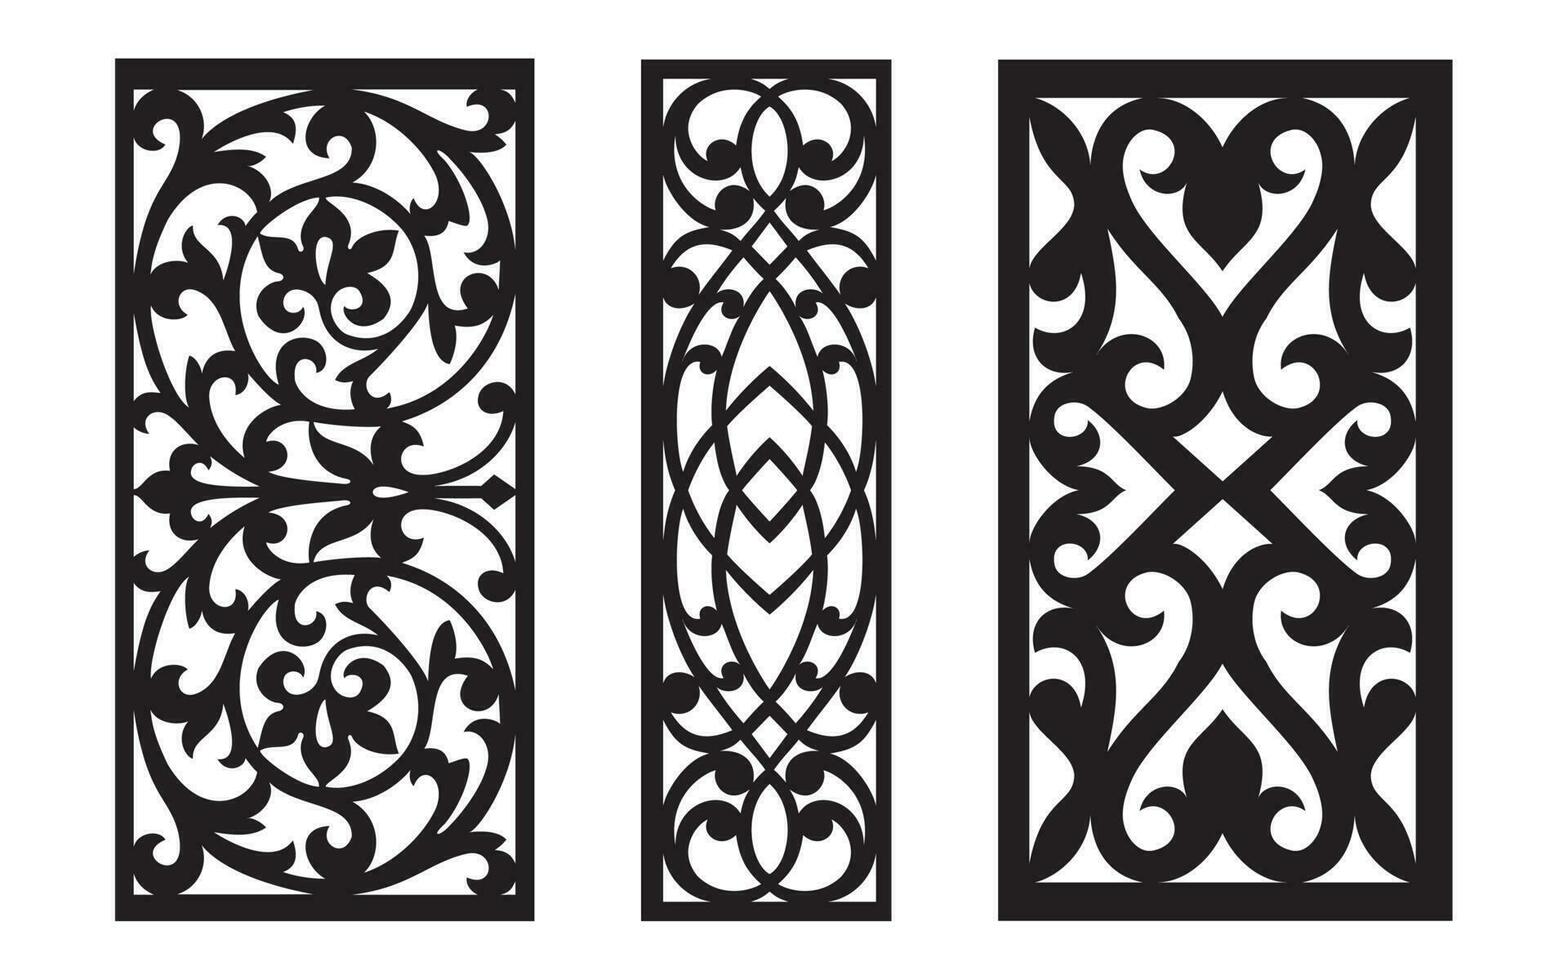 decorativo negro patrones con blanco fondo, geométrico, islámico y floral modelo para cnc láser corte vector